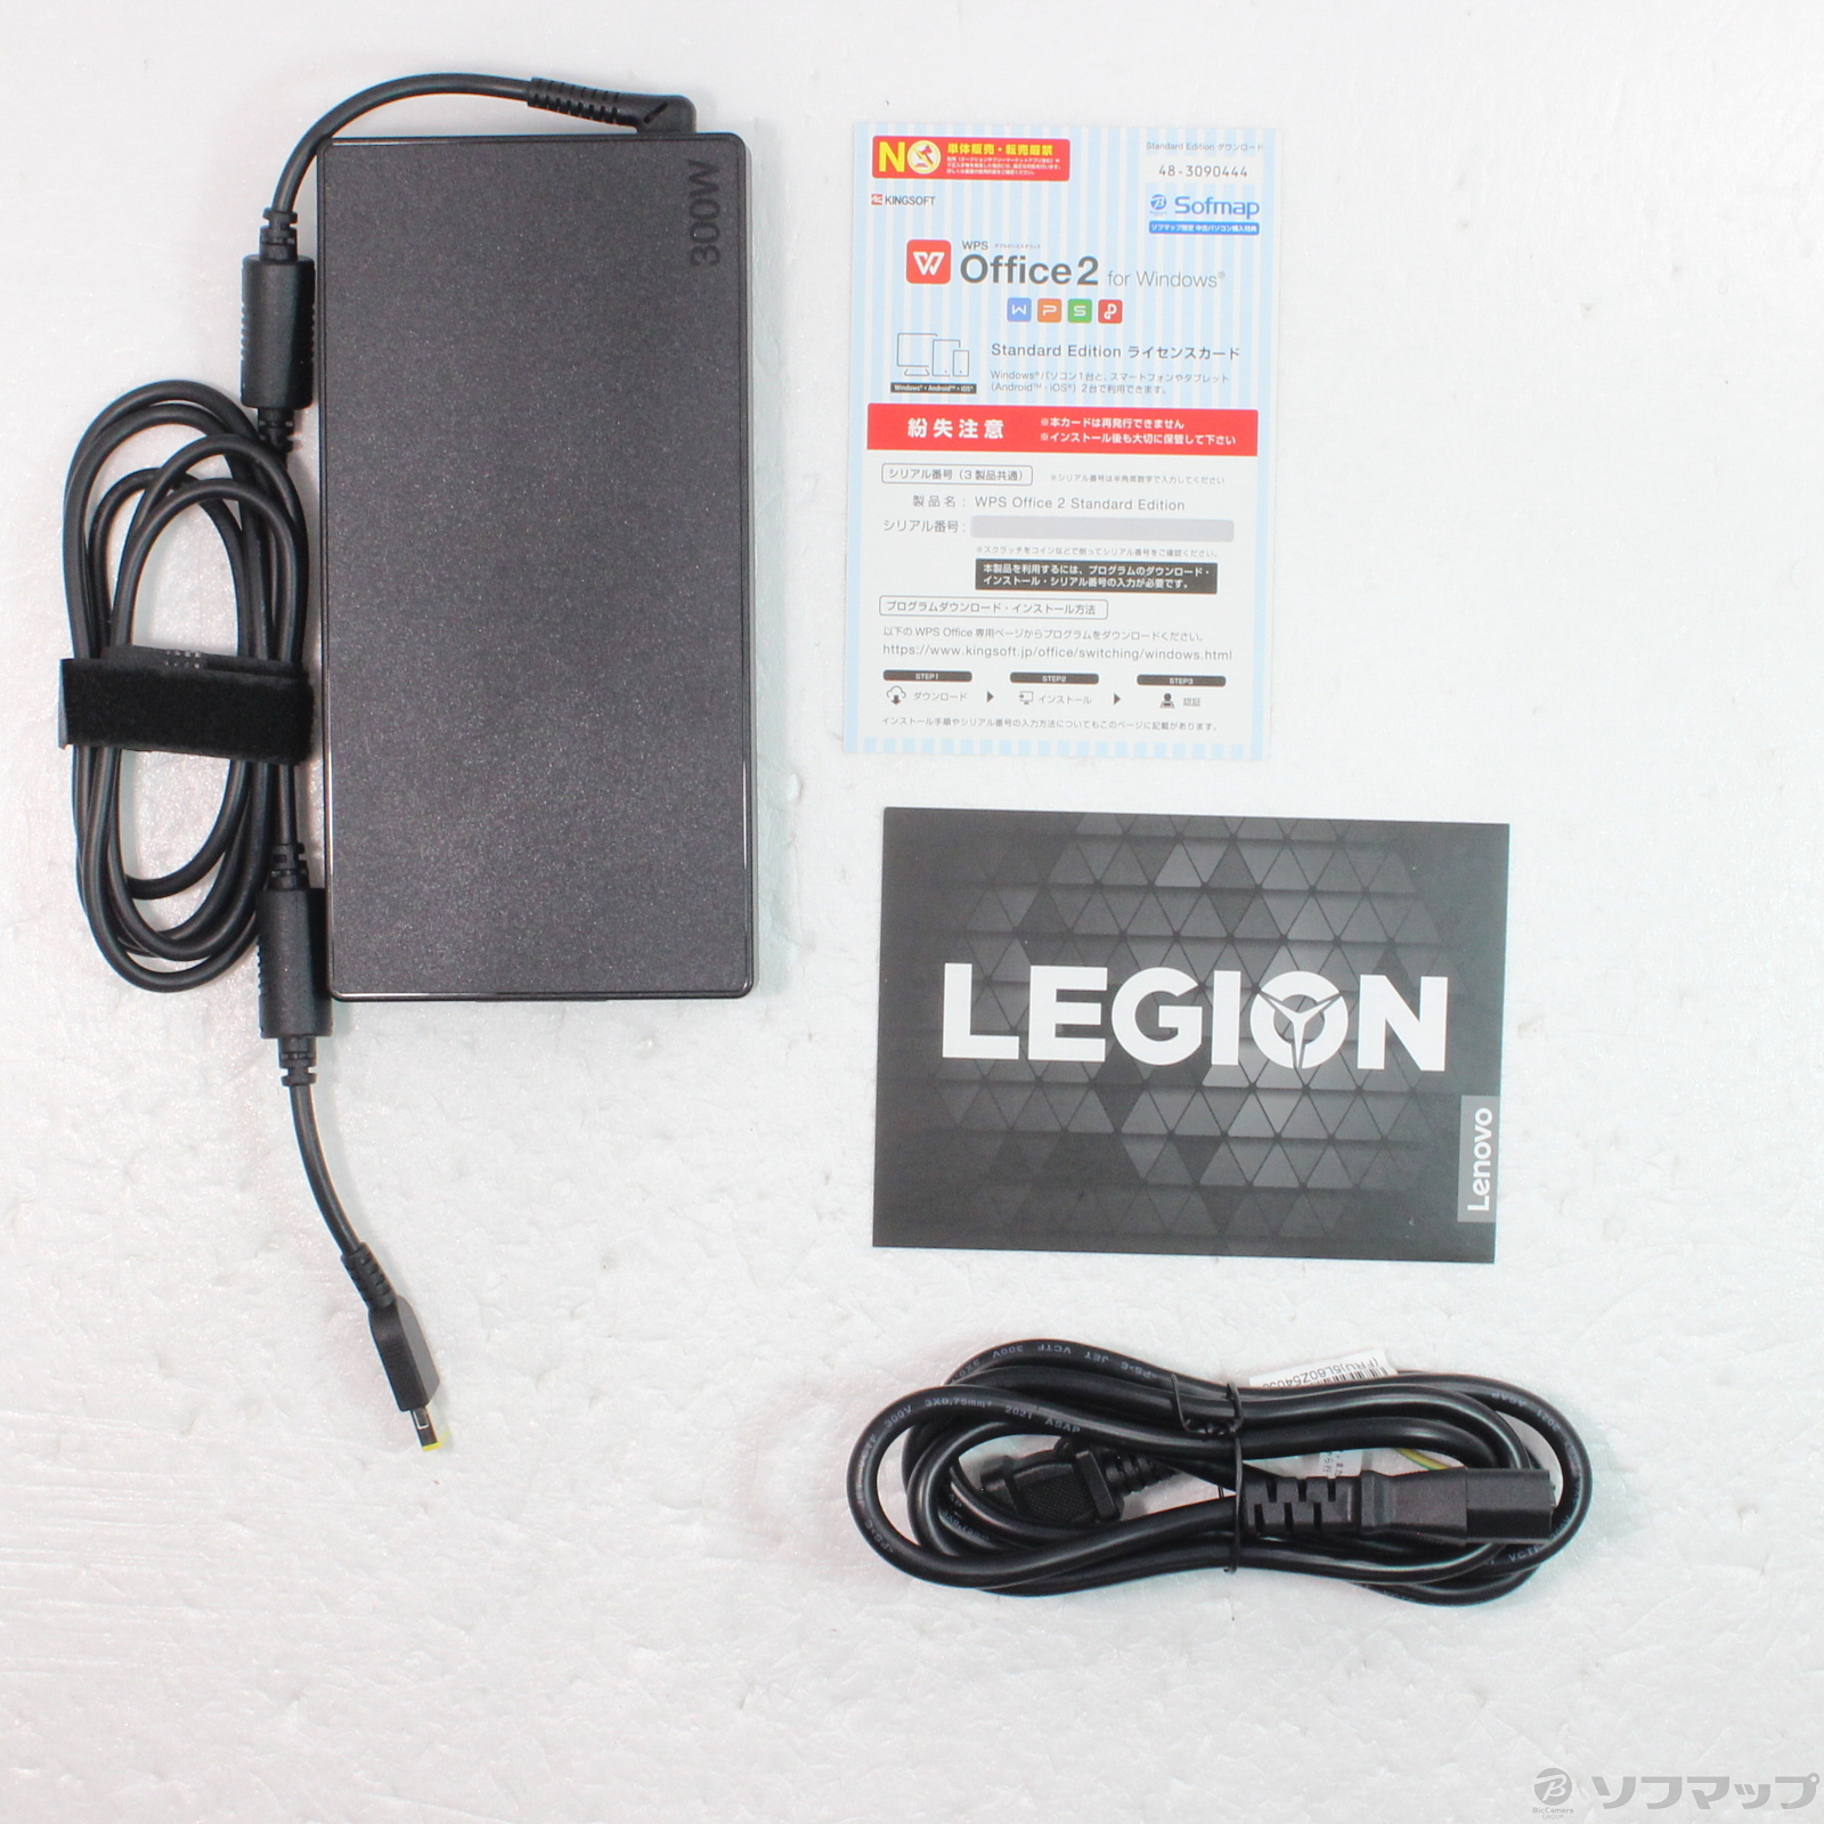 〔展示品〕 Legion 560 Pro 82JQ005QJP ストームグレー 〔Windows 10〕